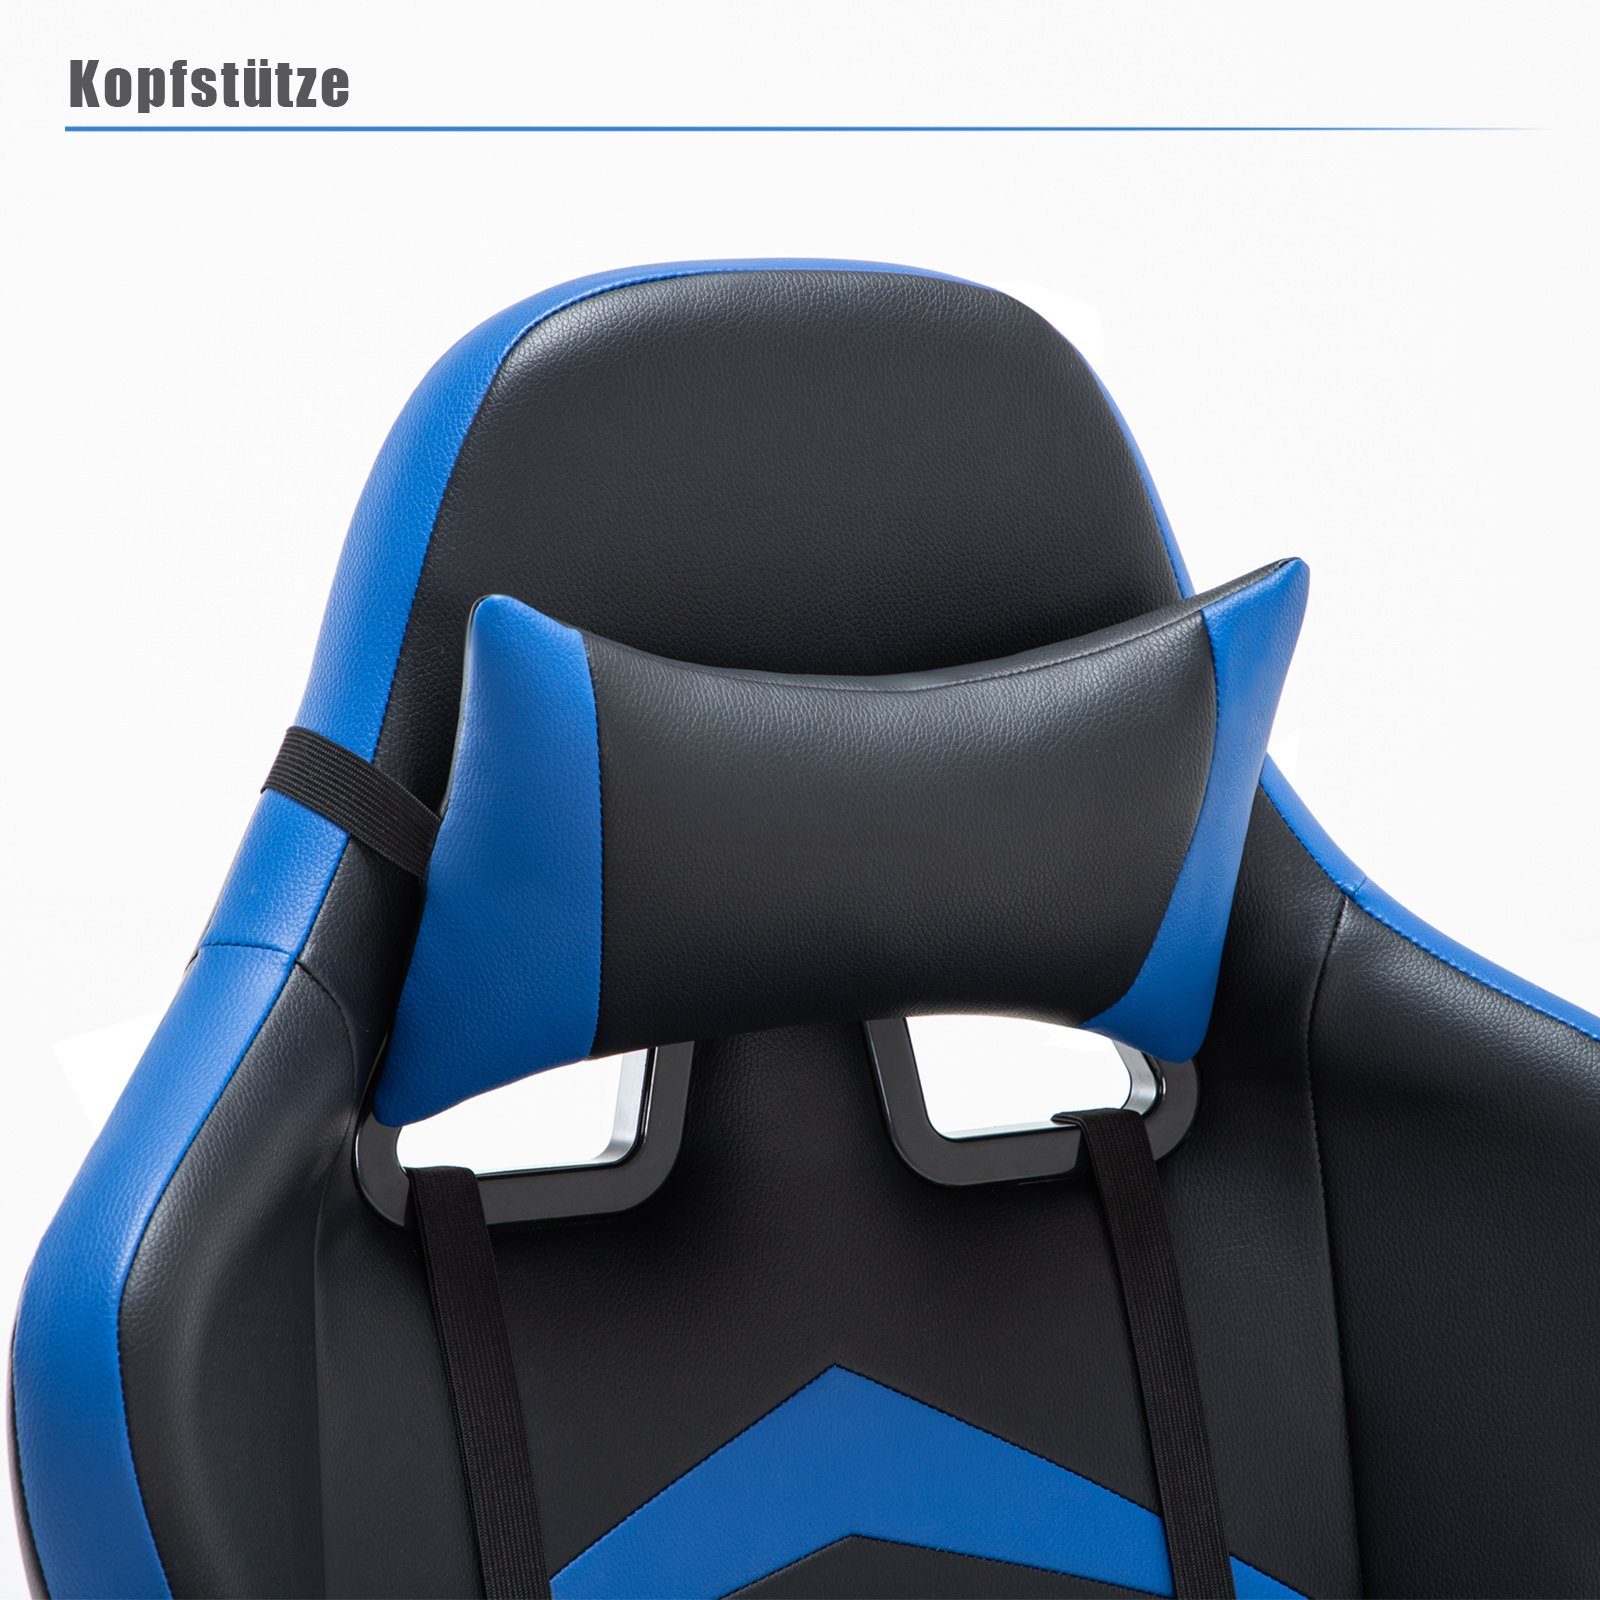 Intimate WM Rückenlehne hoher Ergonomischer Verstellbarer Gaming-Stuhl Heart Schreibtischstuhl blau mit